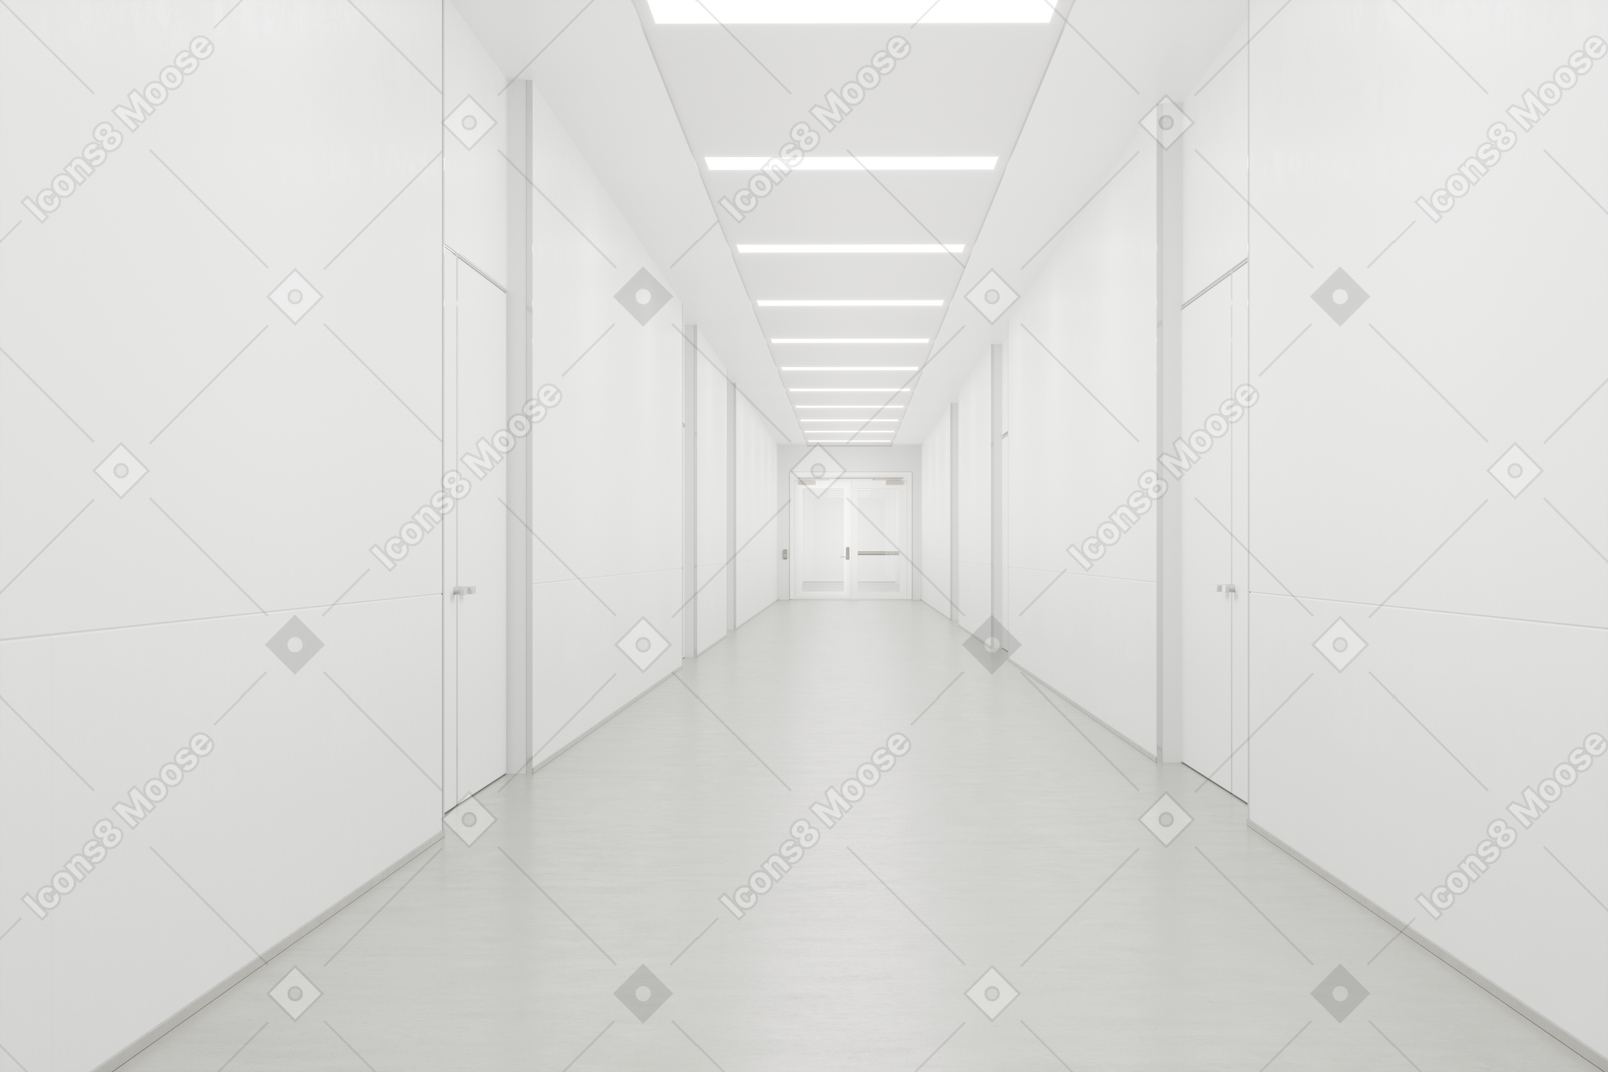 Sterile and bright corridor